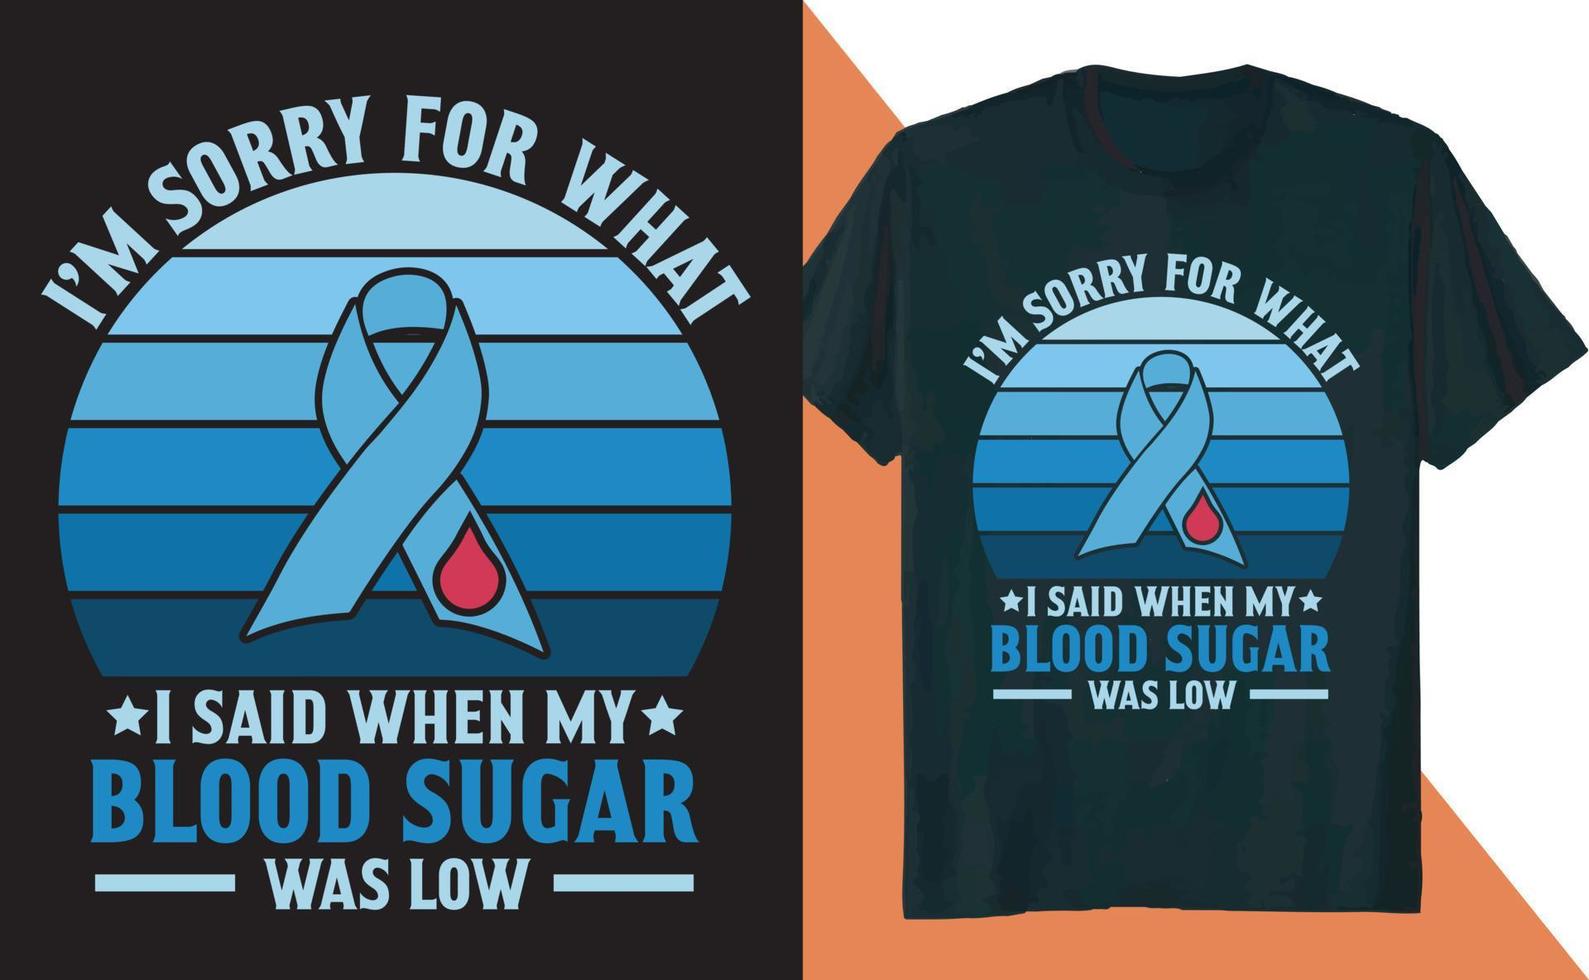 me desculpe pelo que eu disse design de camiseta de insulina diabética para conscientização sobre diabetes vetor